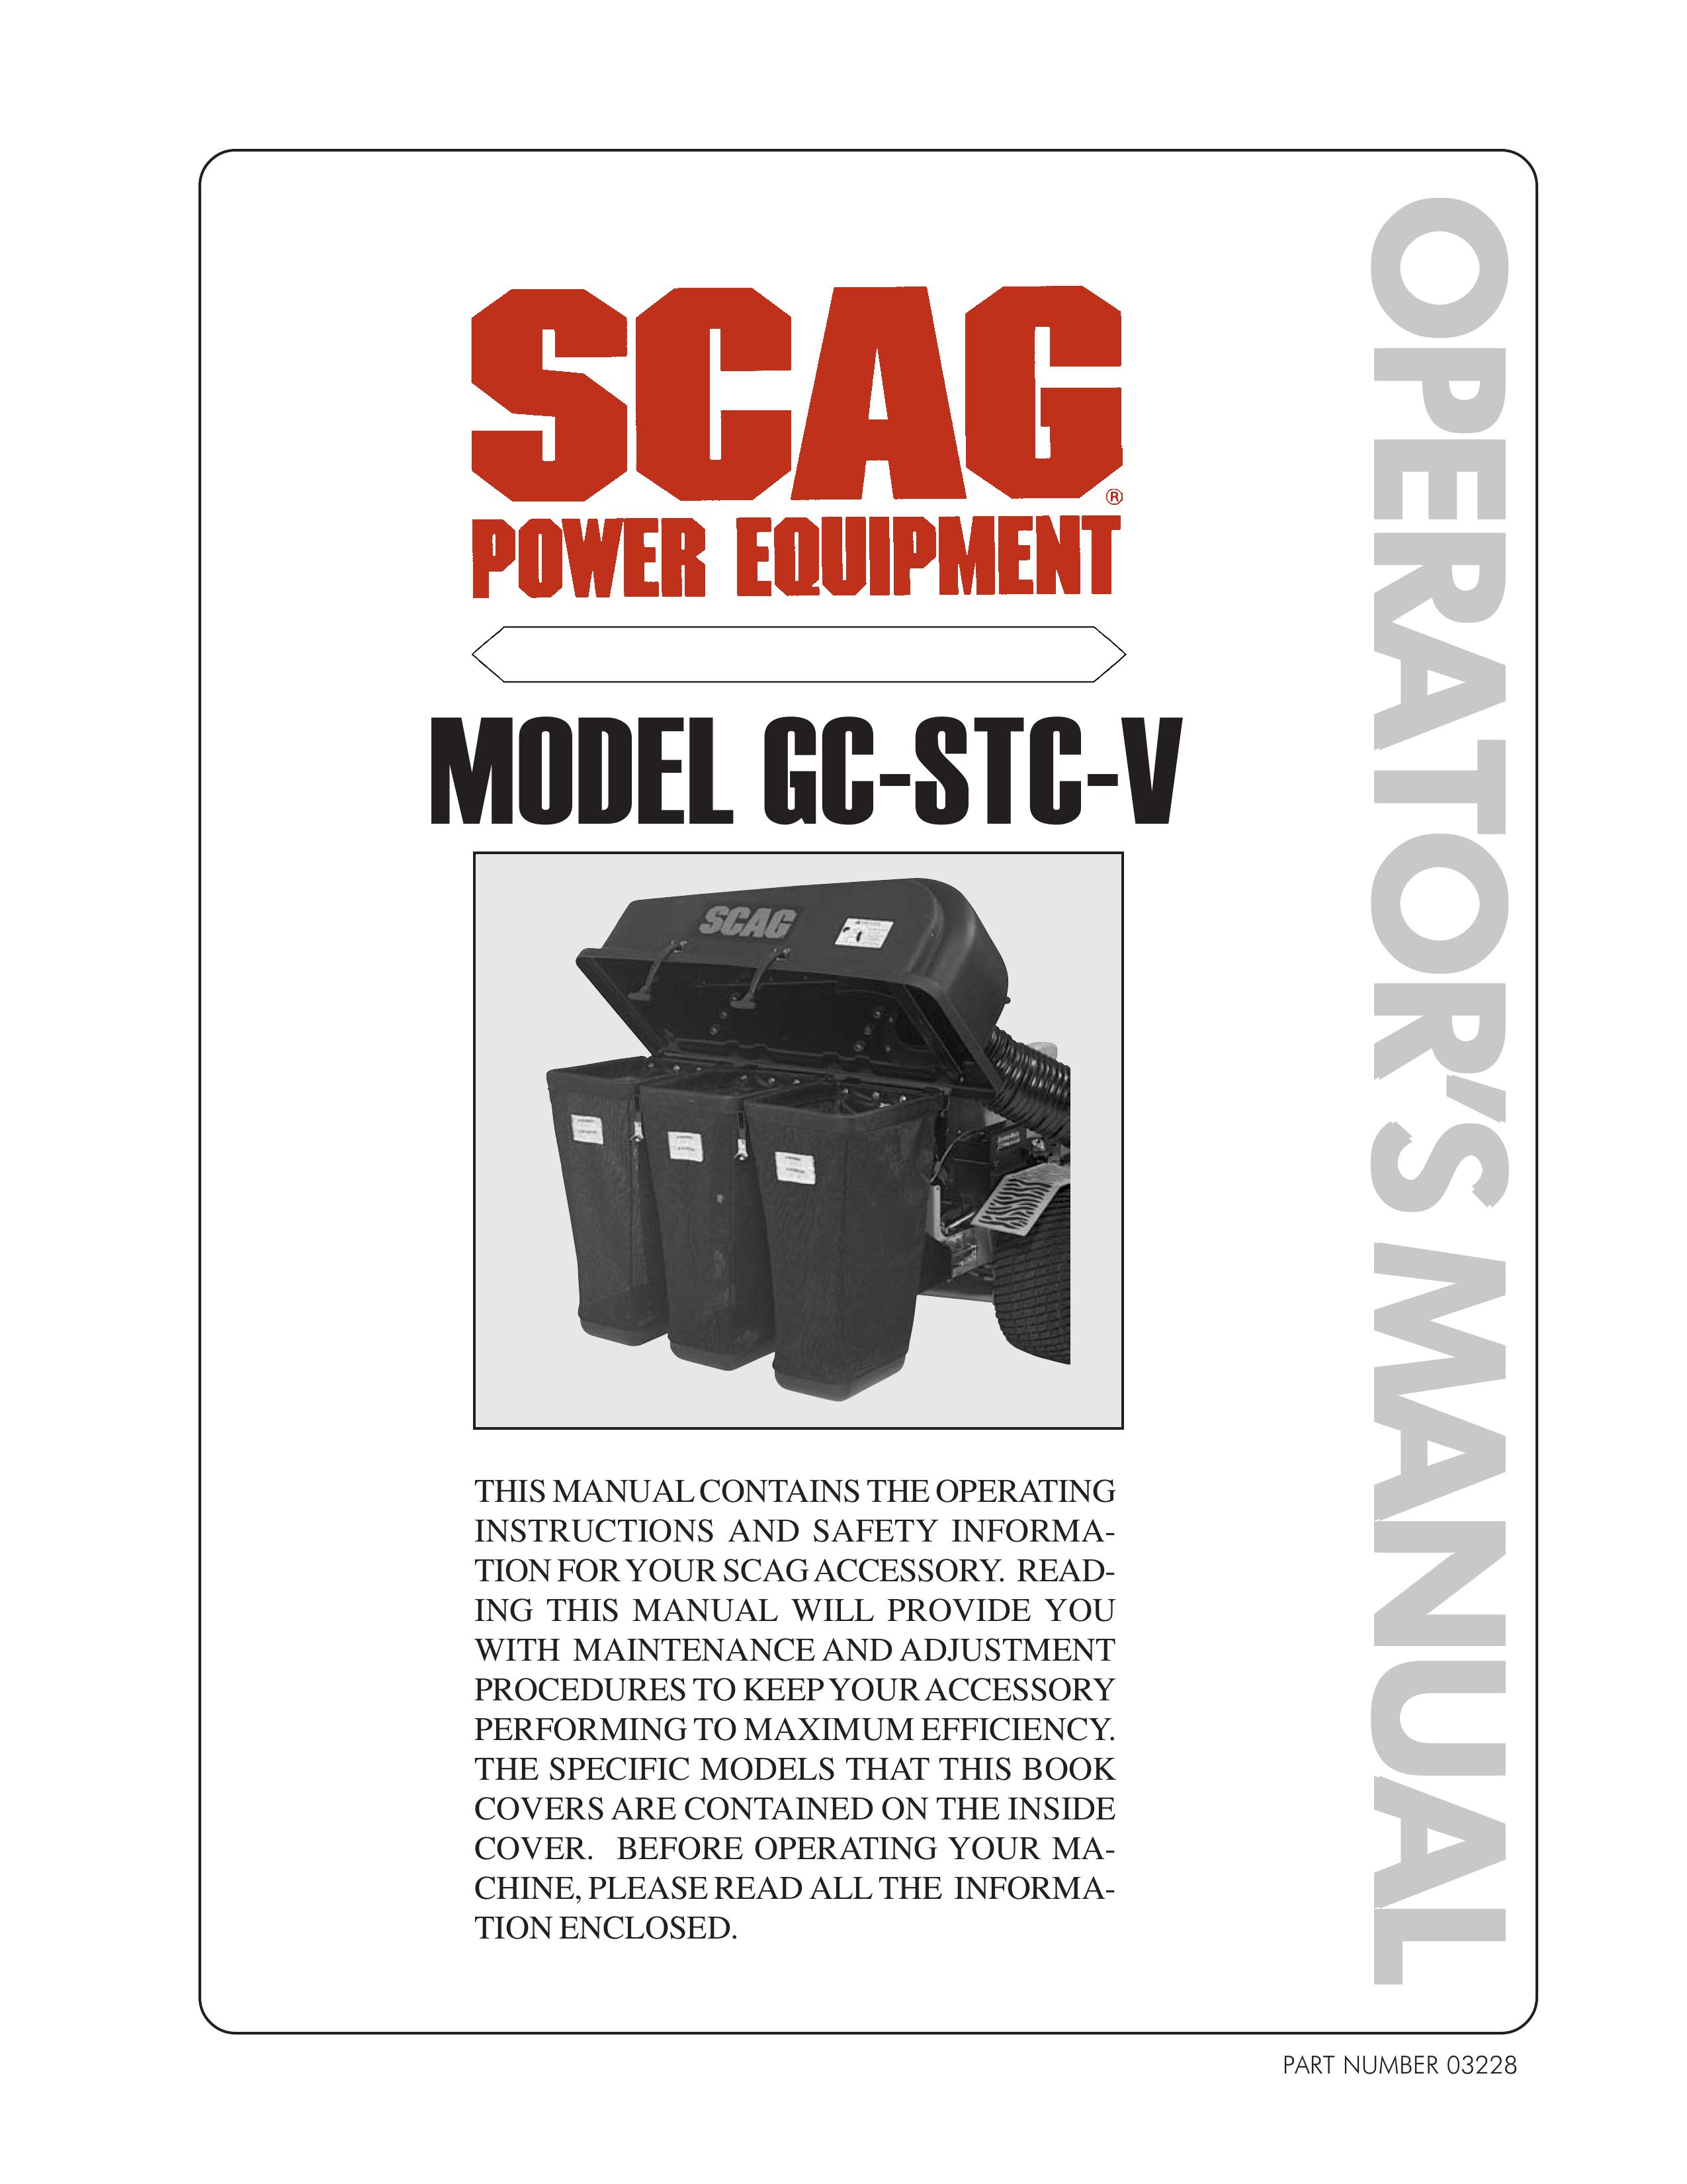 Scag Power Equipment GC-STC-V Brush Cutter User Manual